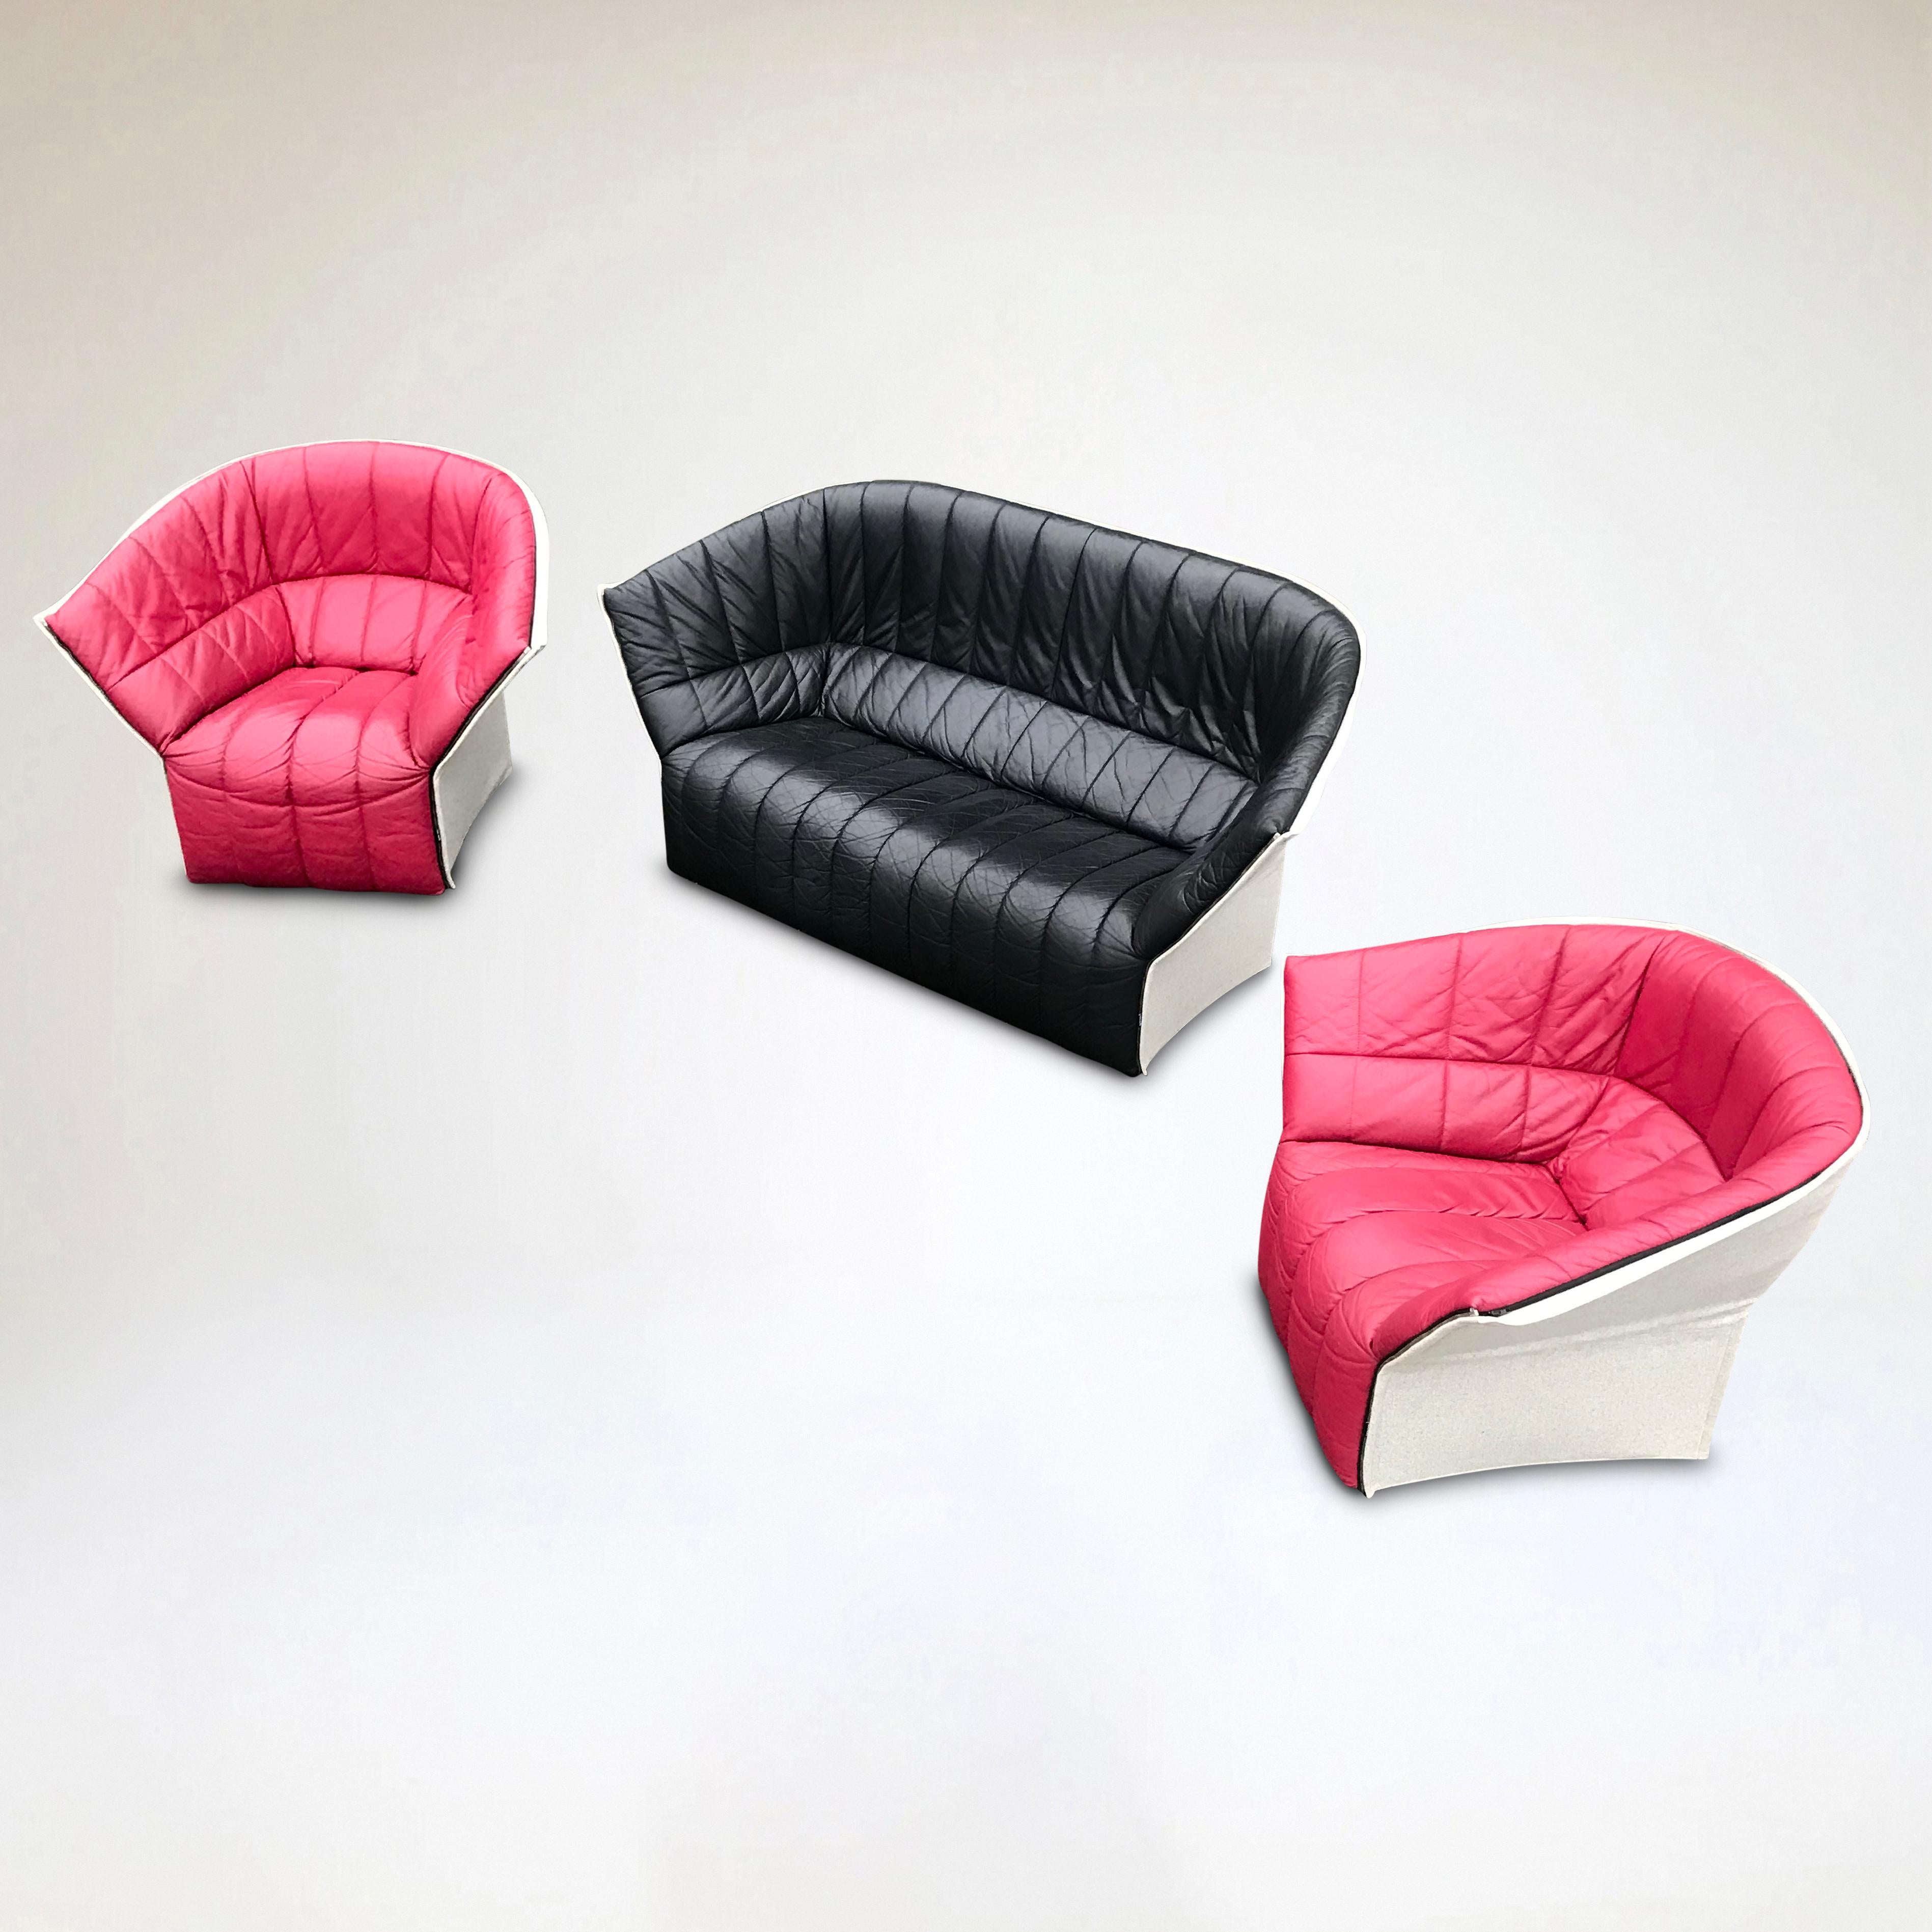 Der Moel von Inga Sempé ist ein zukünftiger Klassiker und wurde als zeitgenössischer Ansatz für einen gekapselten Sitz mit hochflexiblen Seiten- und Rückenlehnen entworfen.

In typischer Ligne Roset-Manier ist das Sofa königlich mit Formschaum